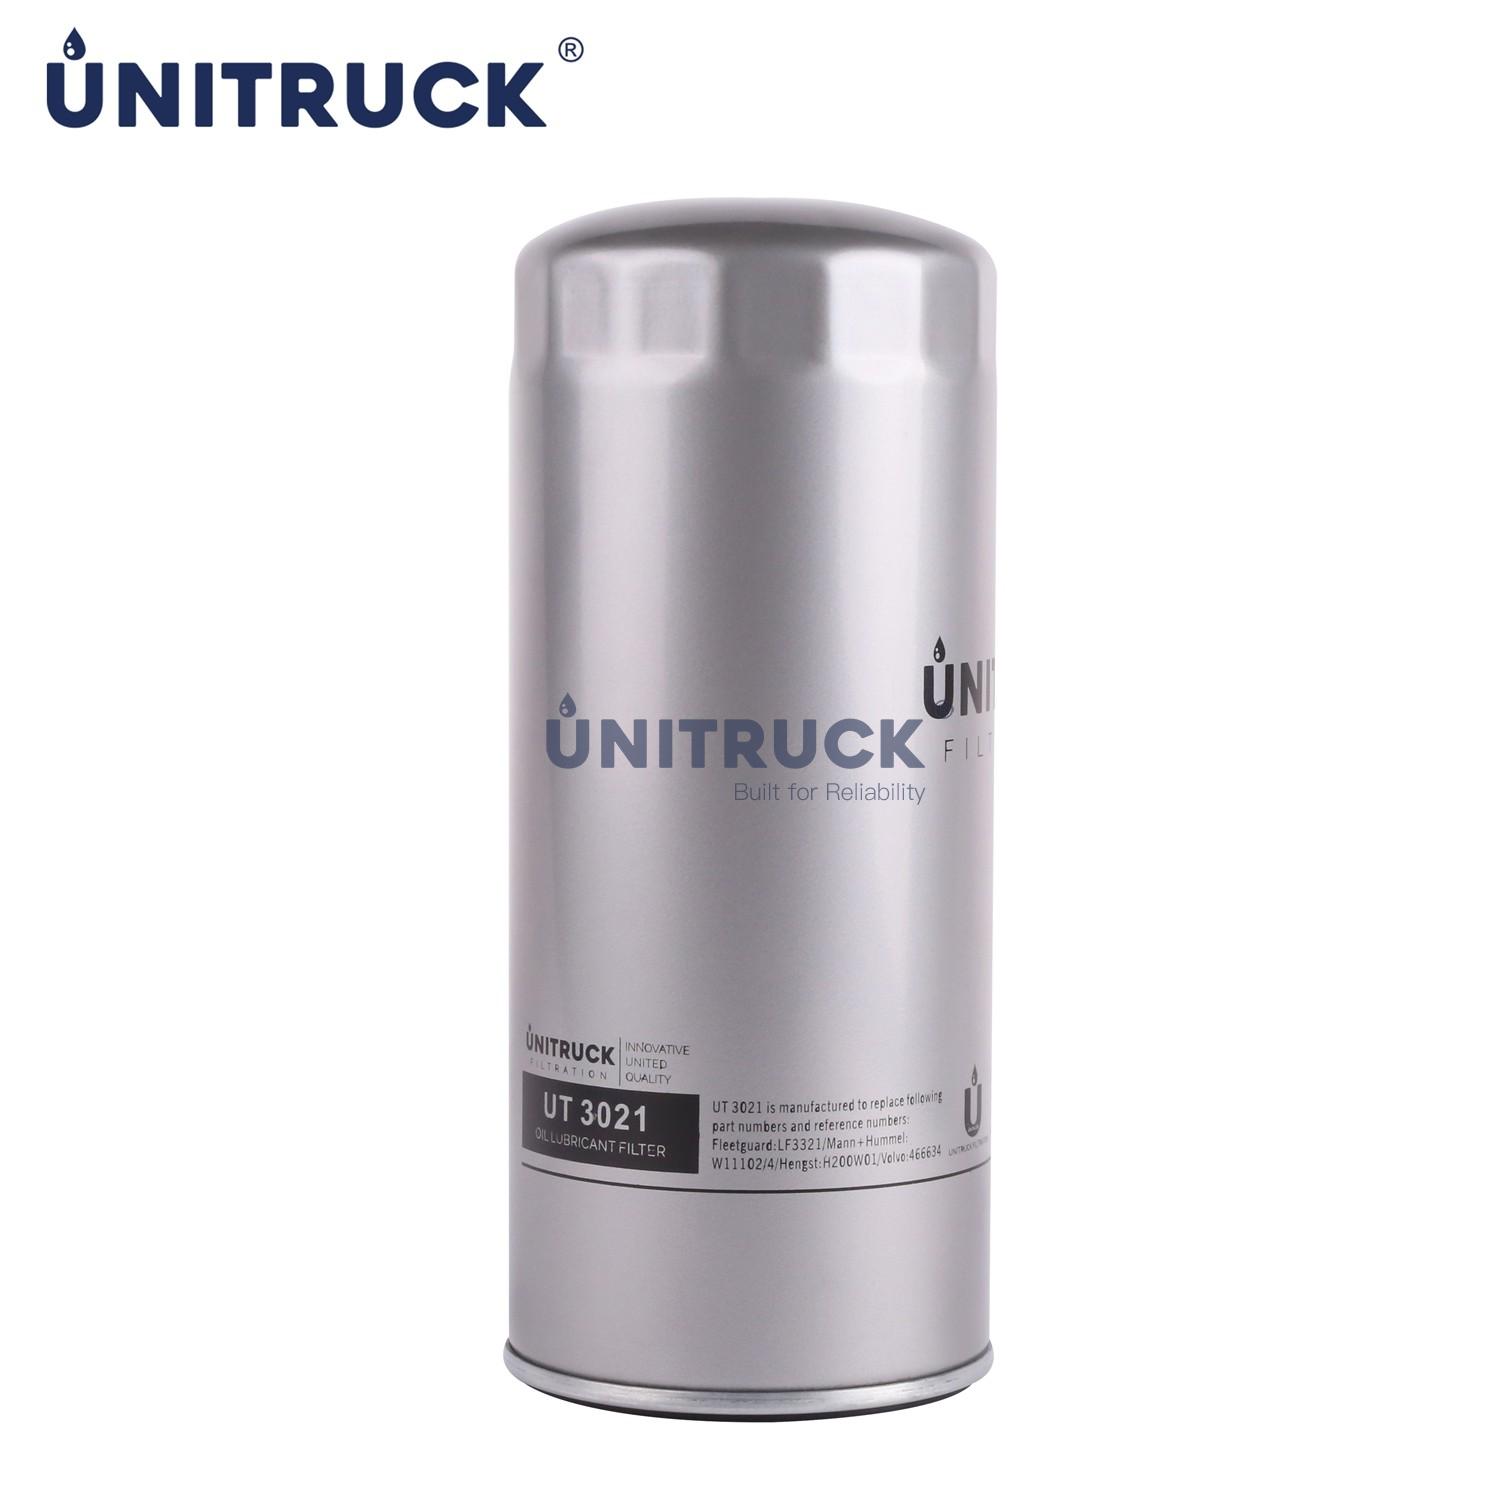 UNITRUCK Oil Filter for 466634 W11102/4 LF3321